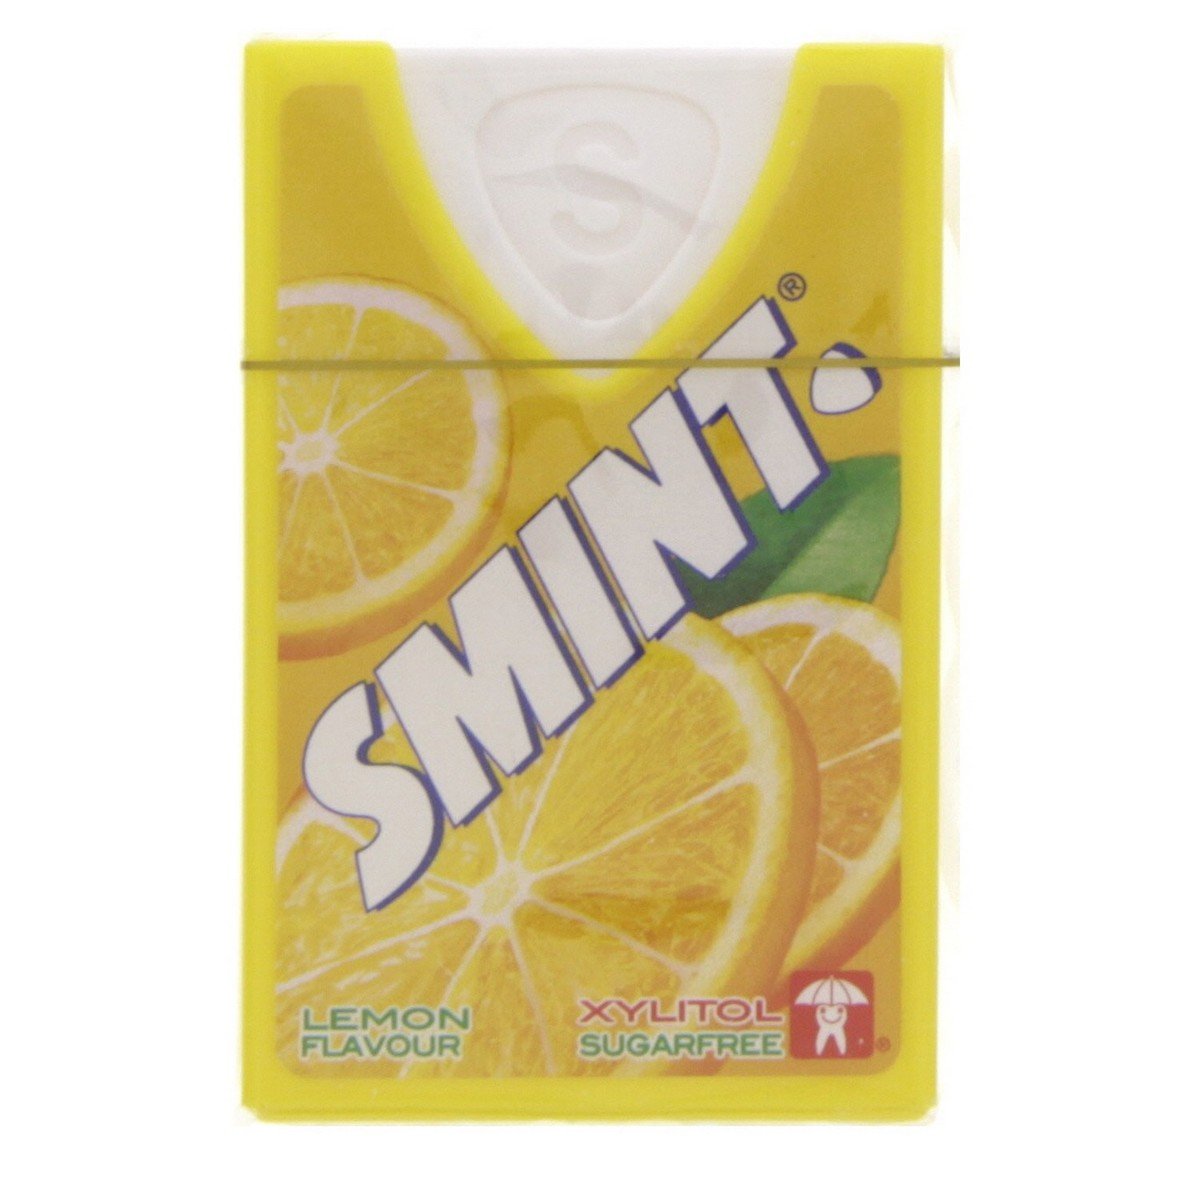 Smint Sugar Free Xylitol Lemon Flavour 8 g